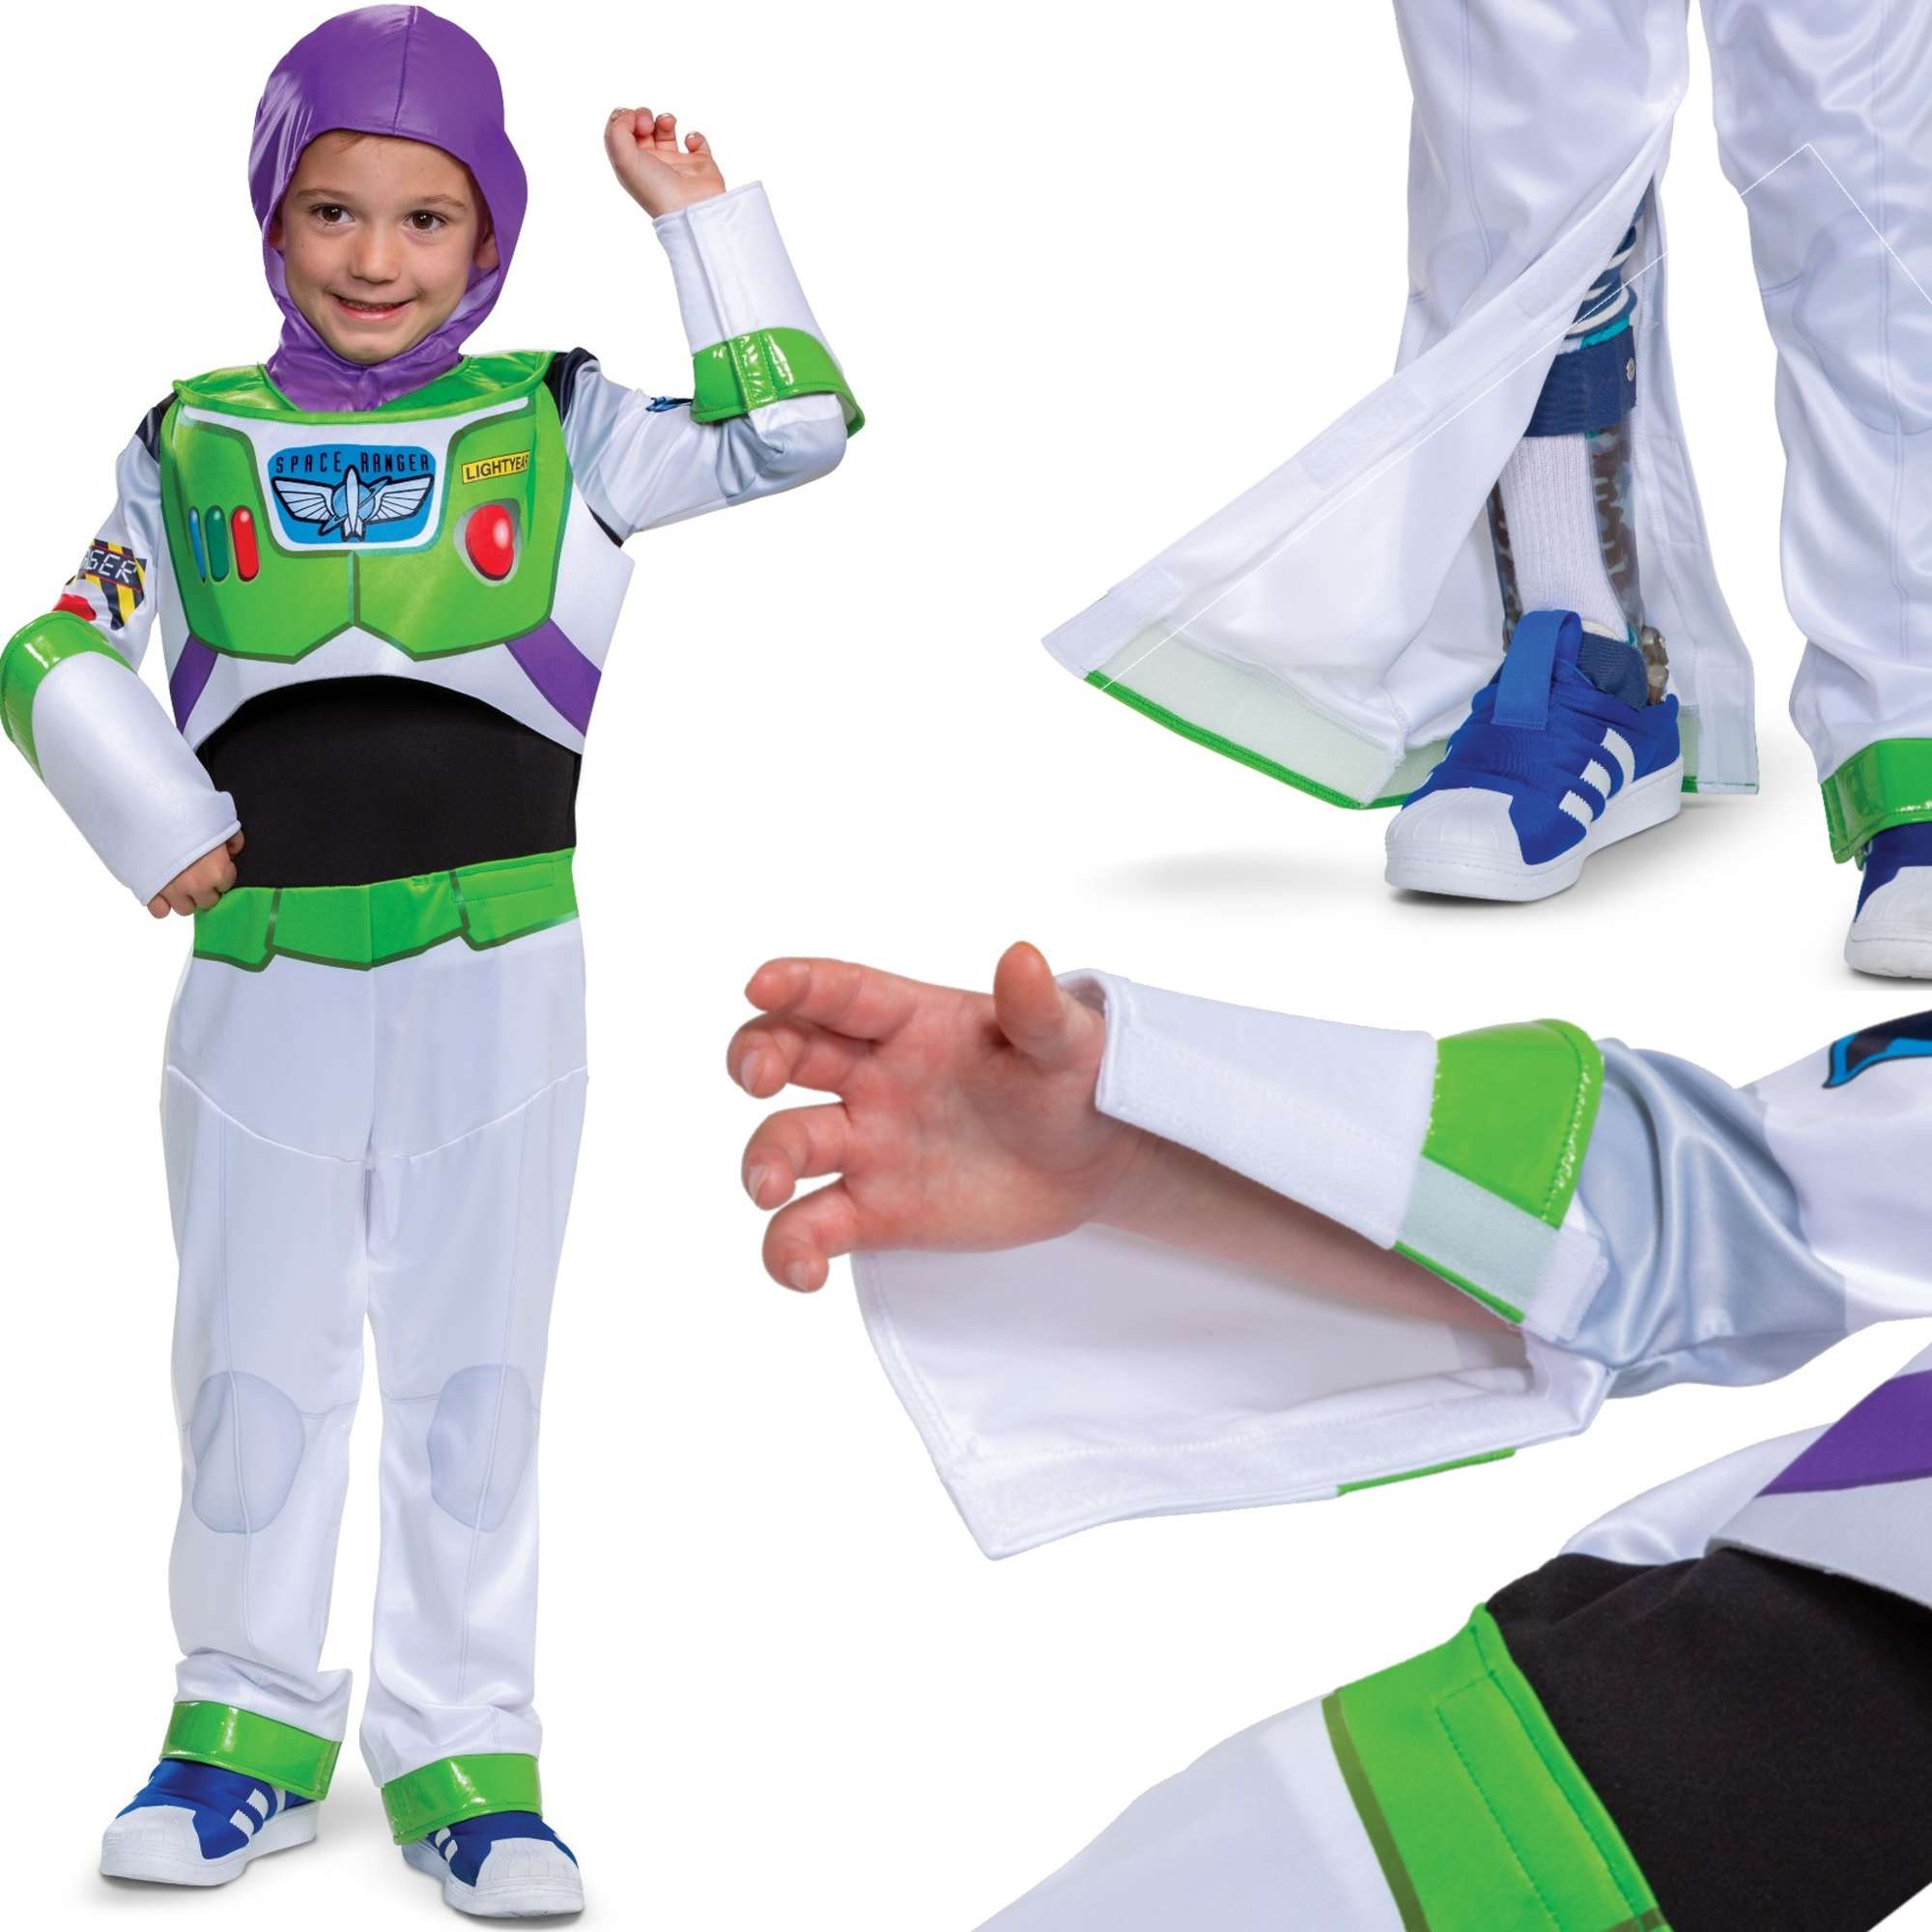 Strj karnawaowy Toy Story dla dzieci Buzz Lightyear kostium przebranie 110-122 cm (4-6 lat)